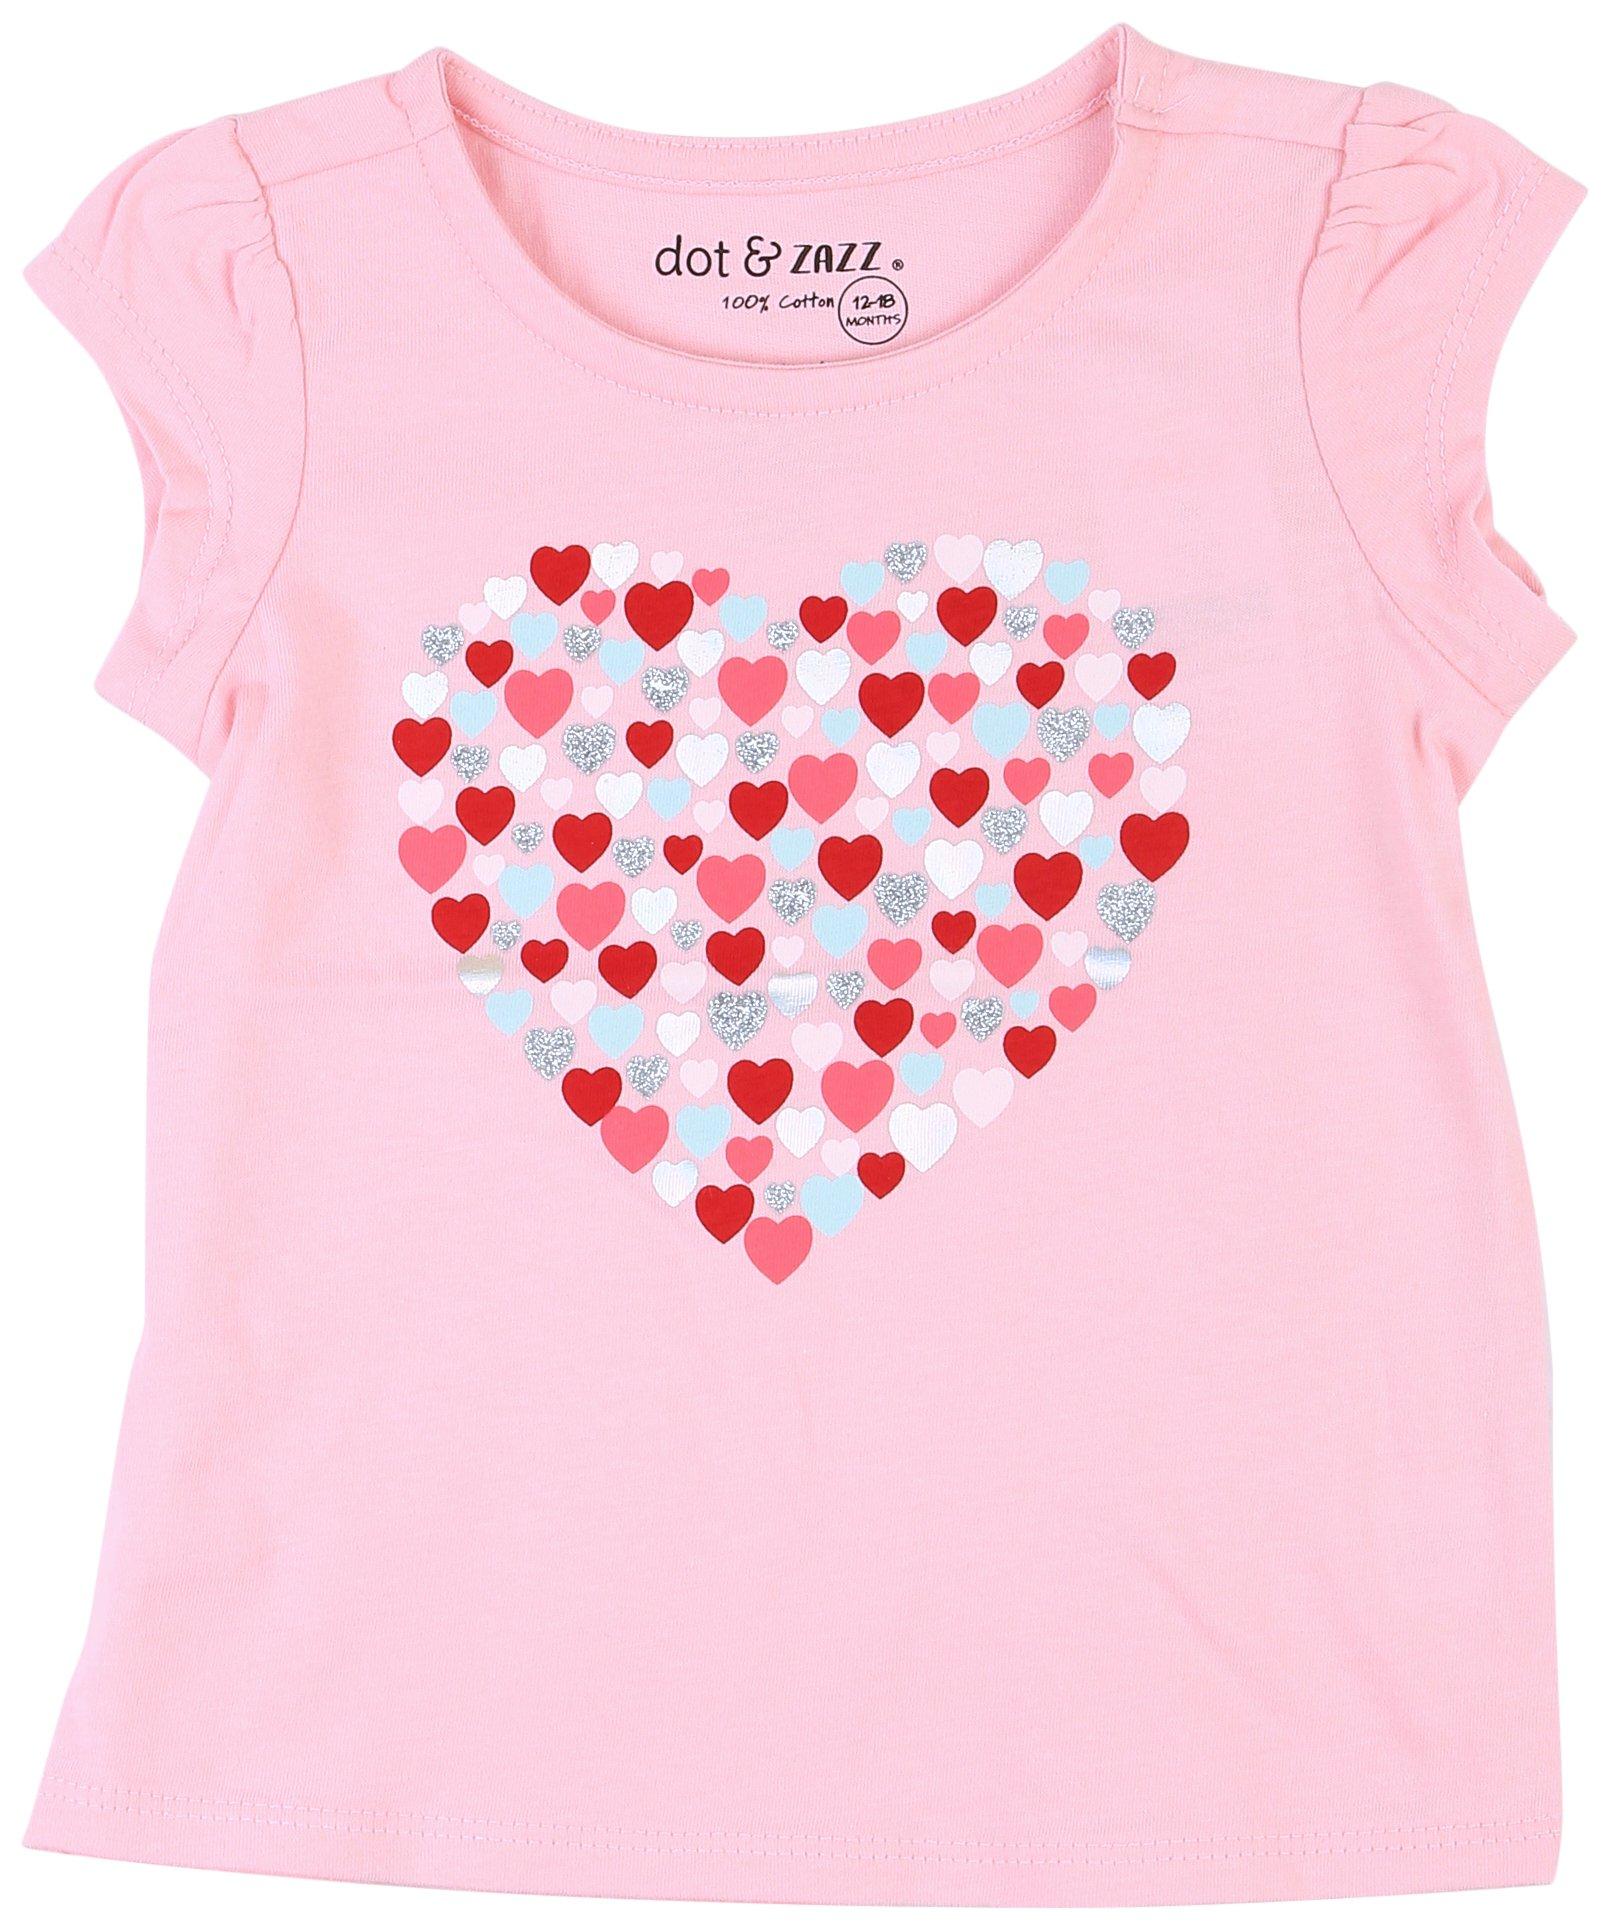 DOT & ZAZZ Baby Girls Valentine's Heart Short